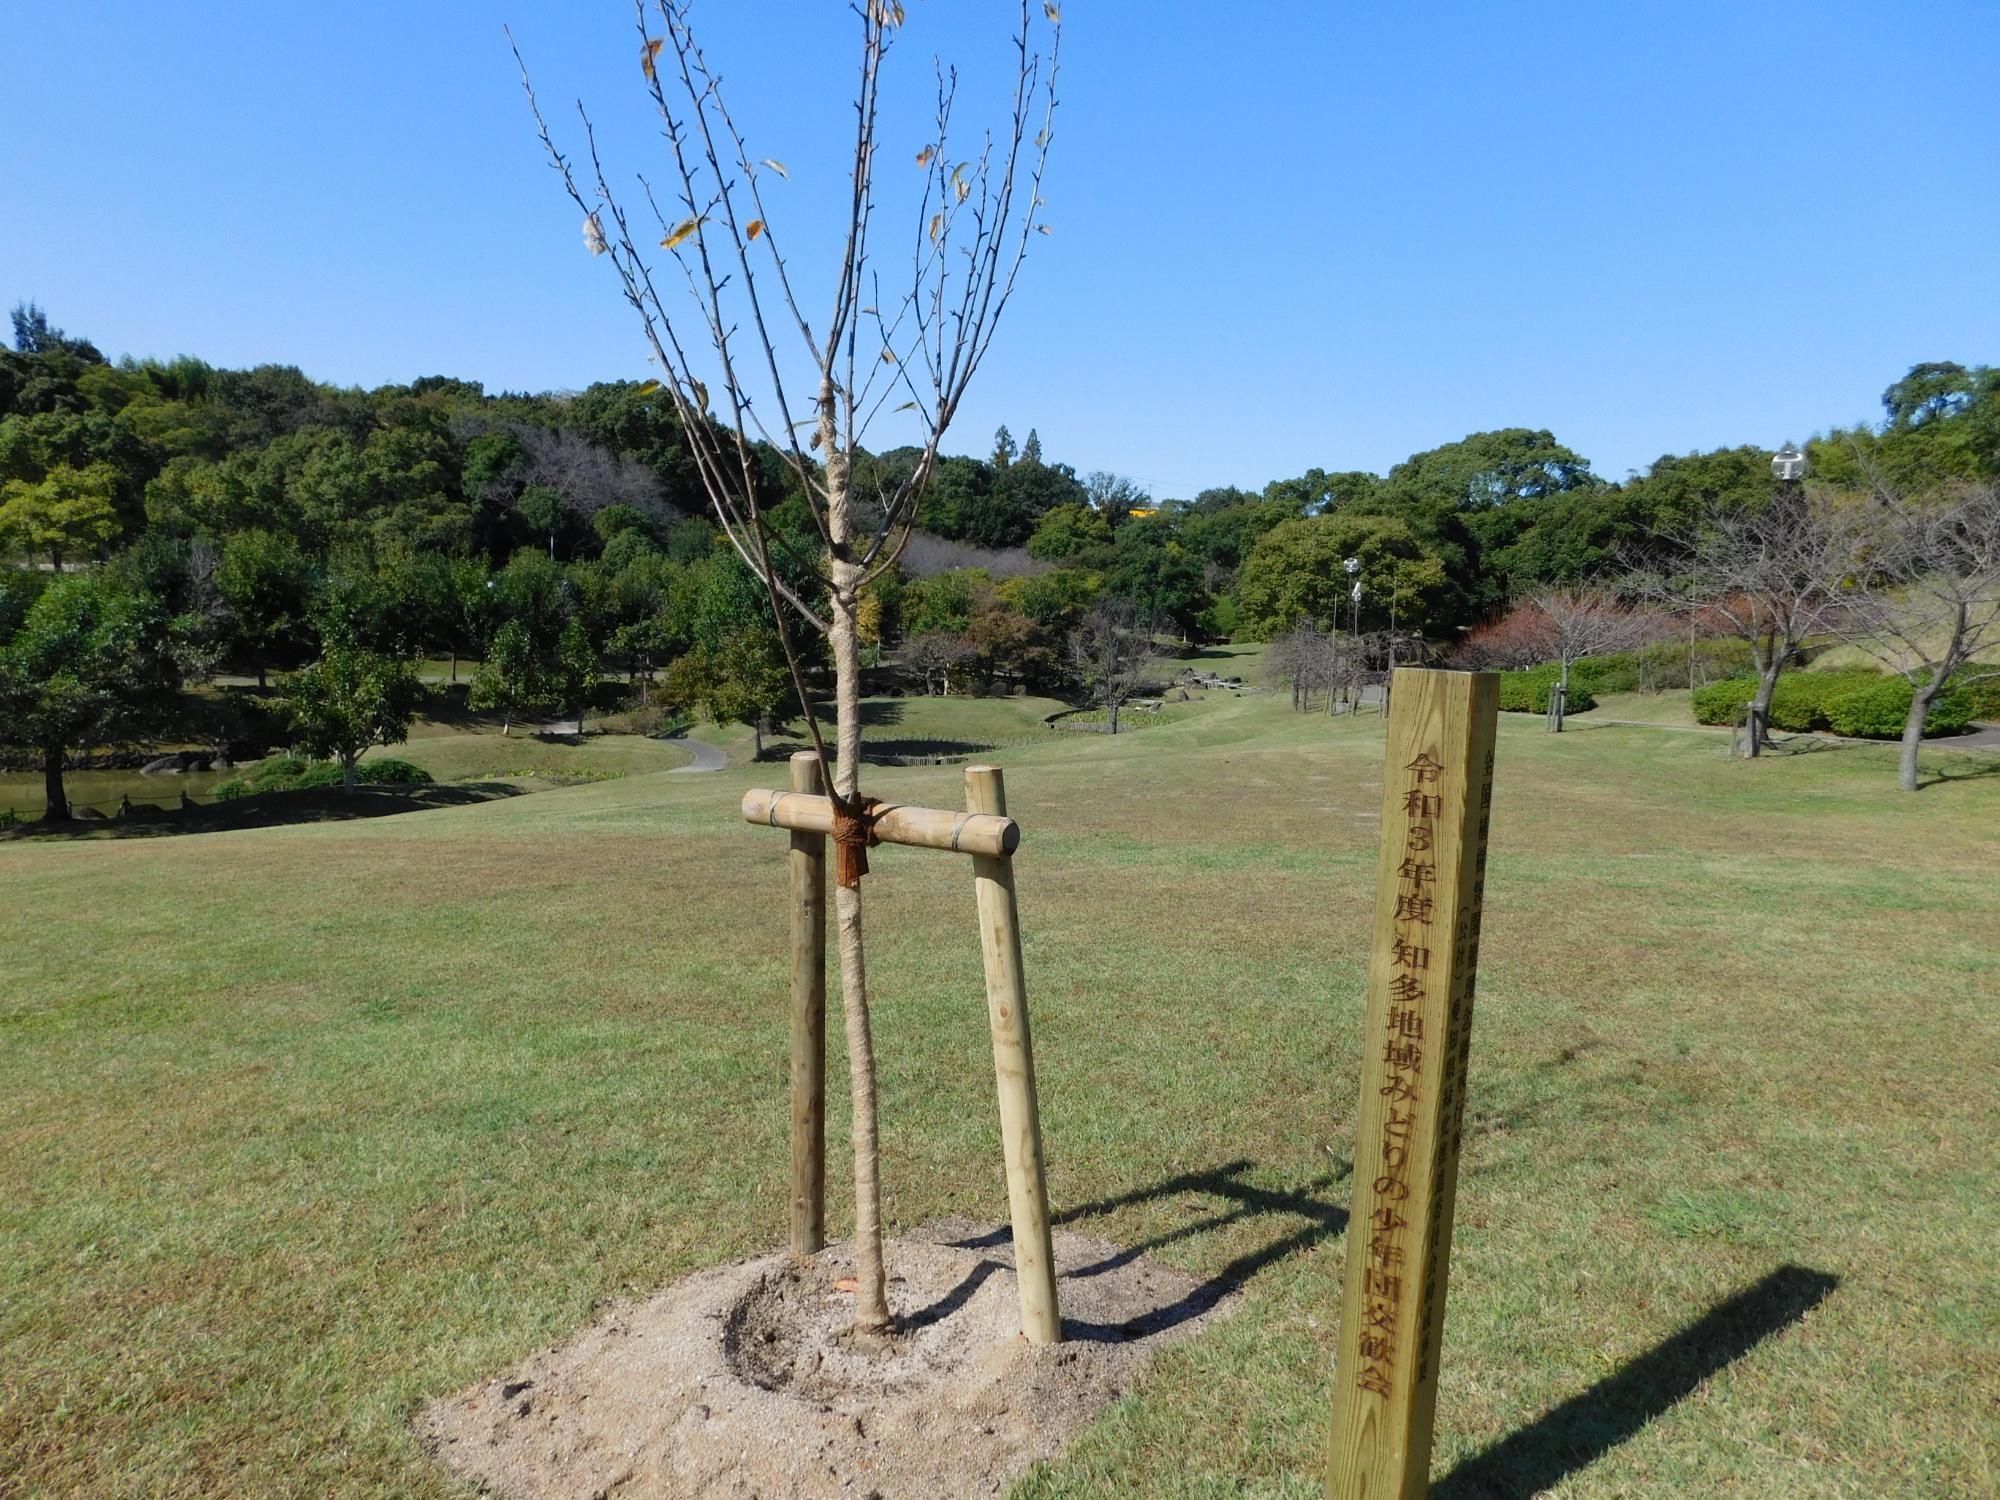 10月23日、知多地域の「みどりの少年団」の交歓会が行われました。これを記念してヤエザクラの関山が2本、桜見の丘の前の芝生広場に記念植樹されました。